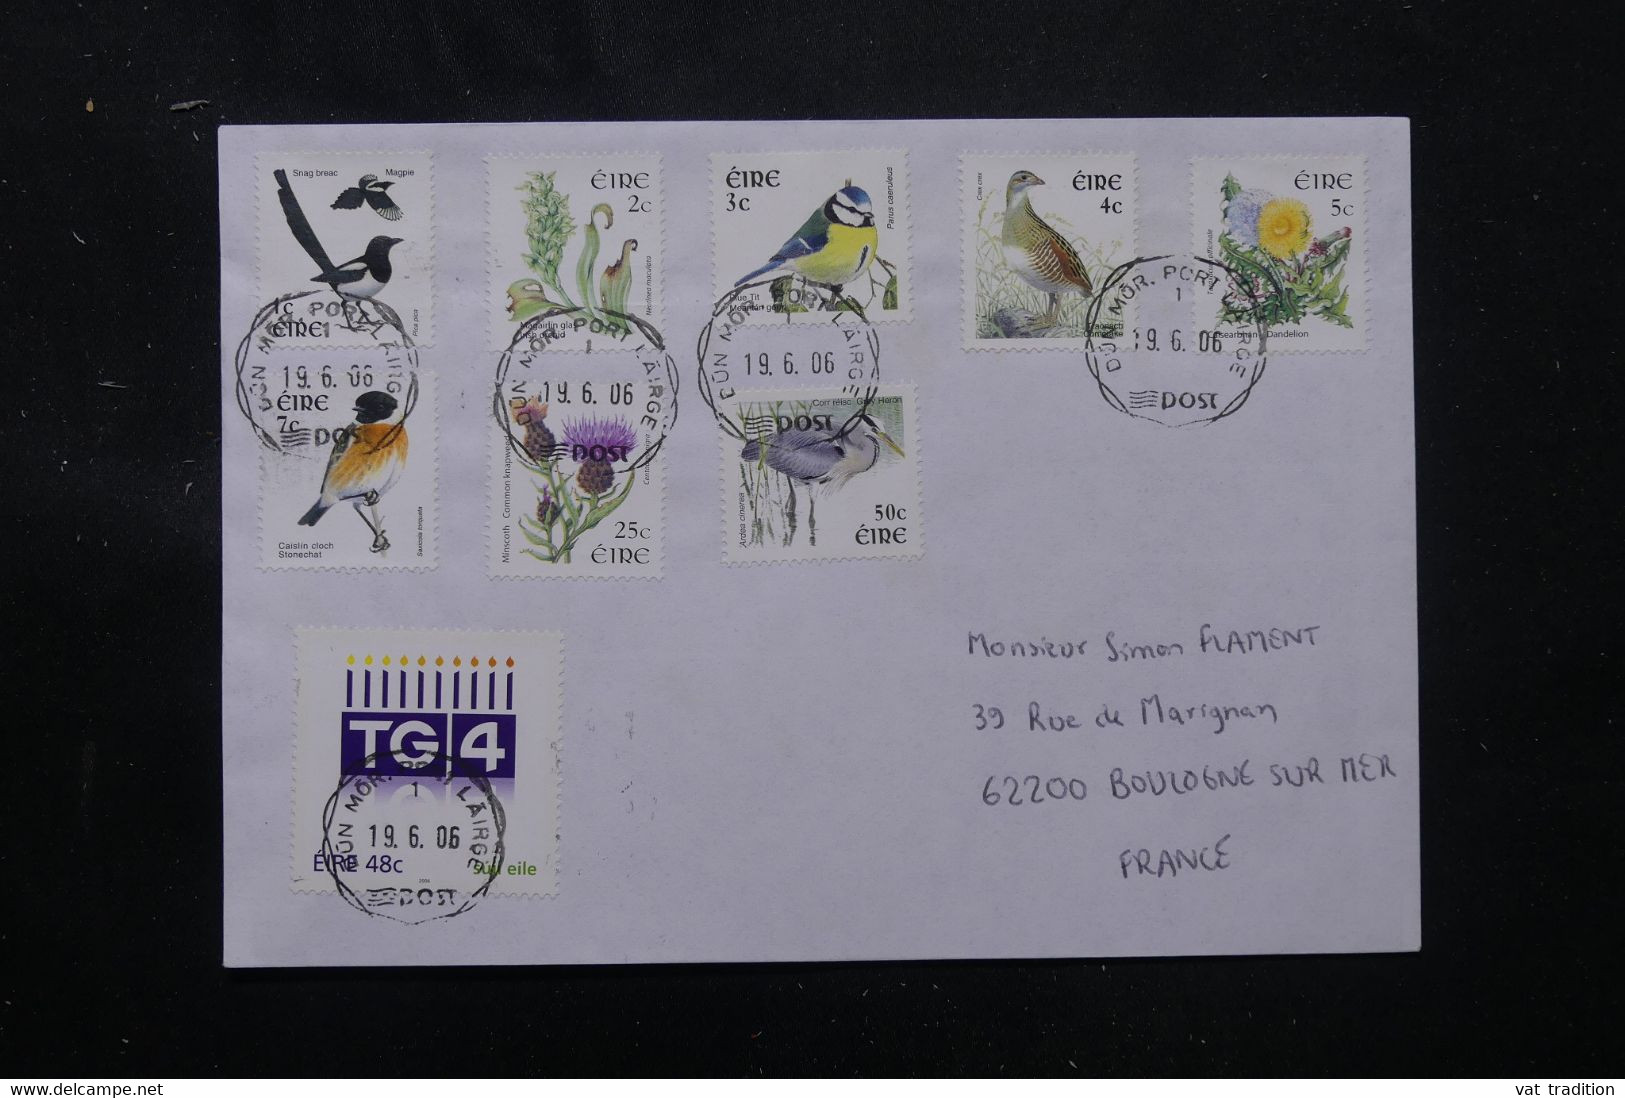 IRLANDE - Enveloppe Pour La France En 2006, Affranchissement Oiseaux - L 76292 - Storia Postale